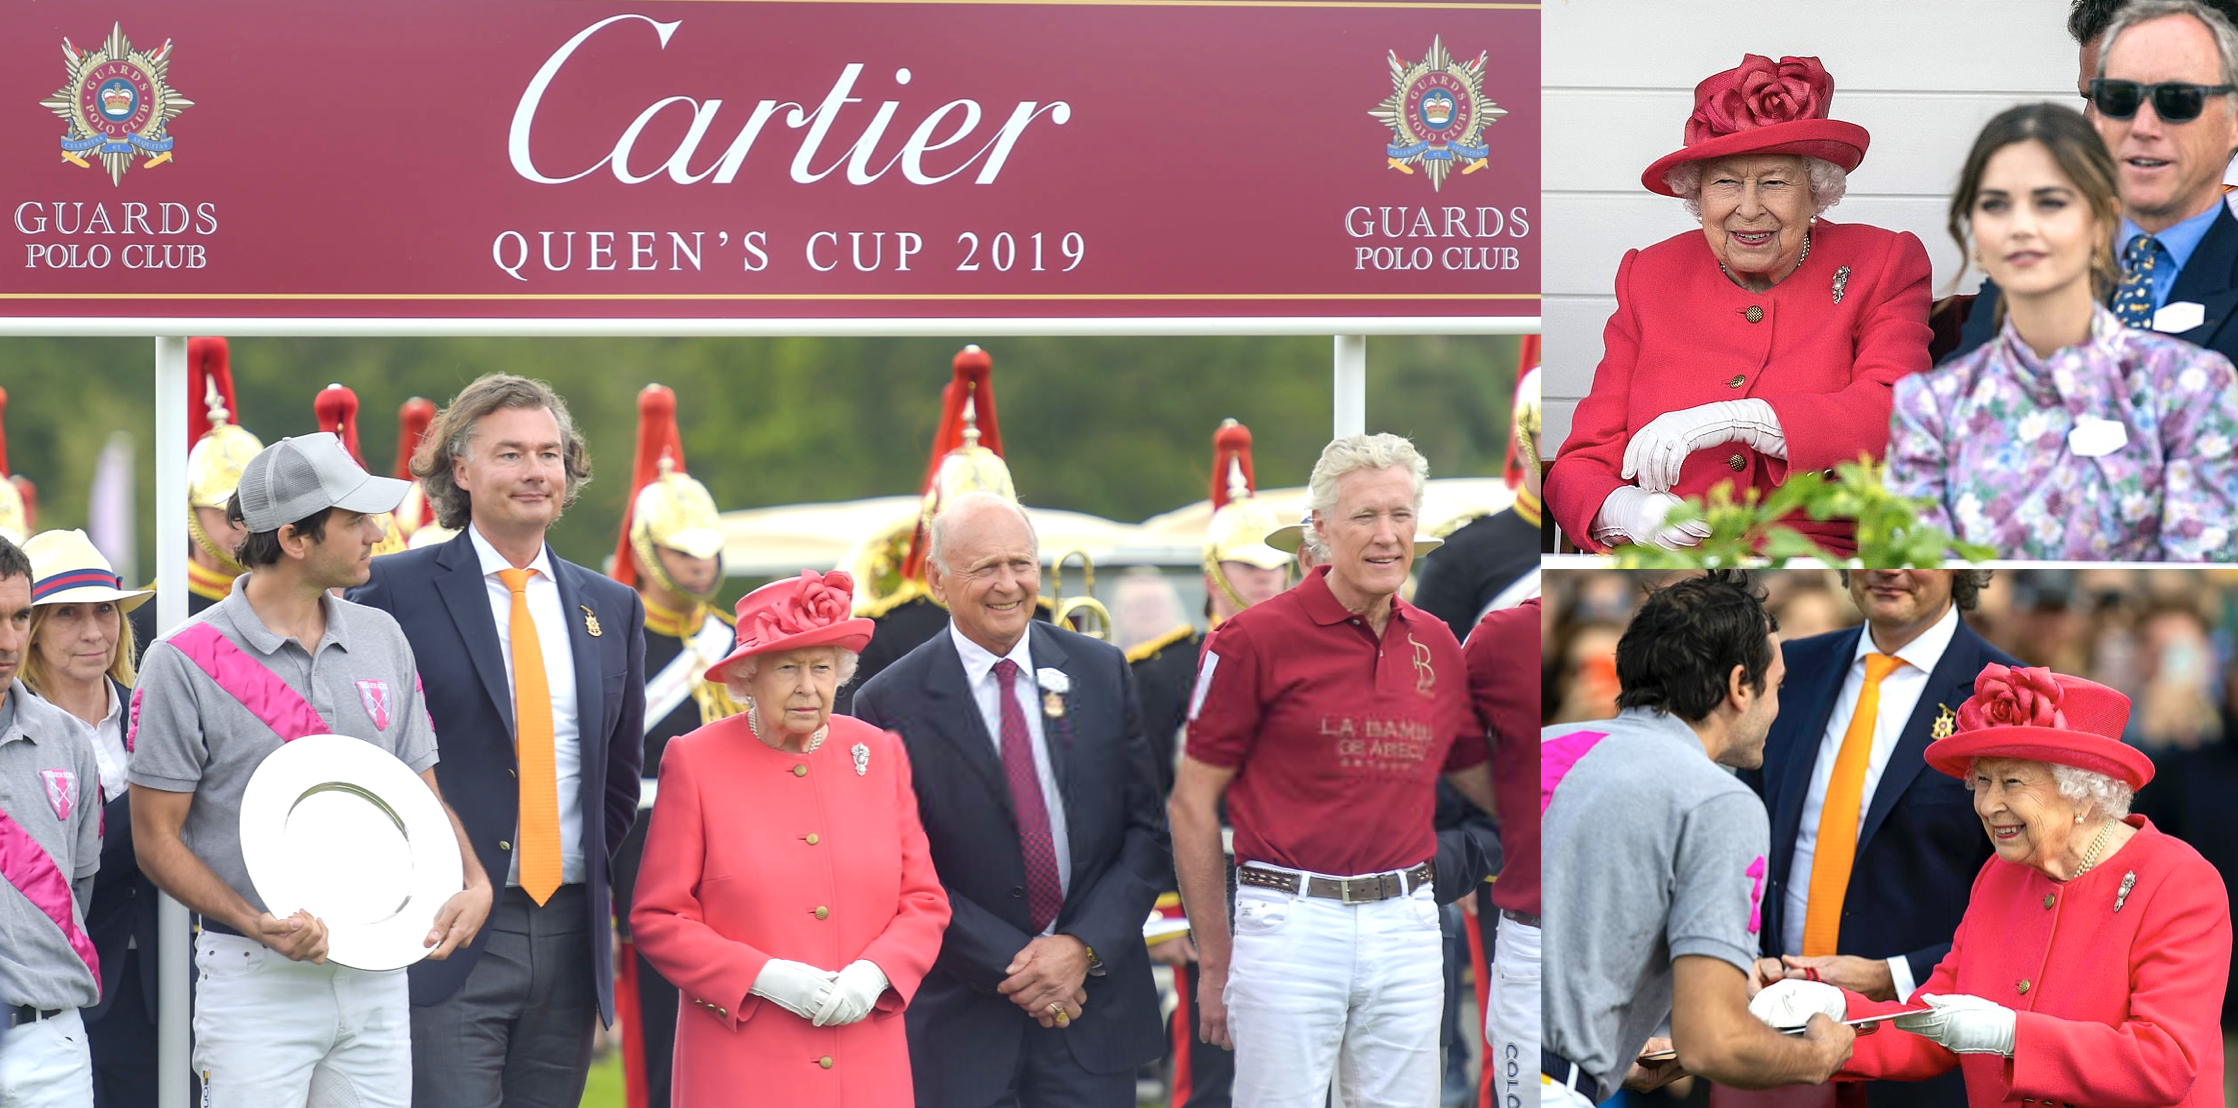 the cartier queen's cup final